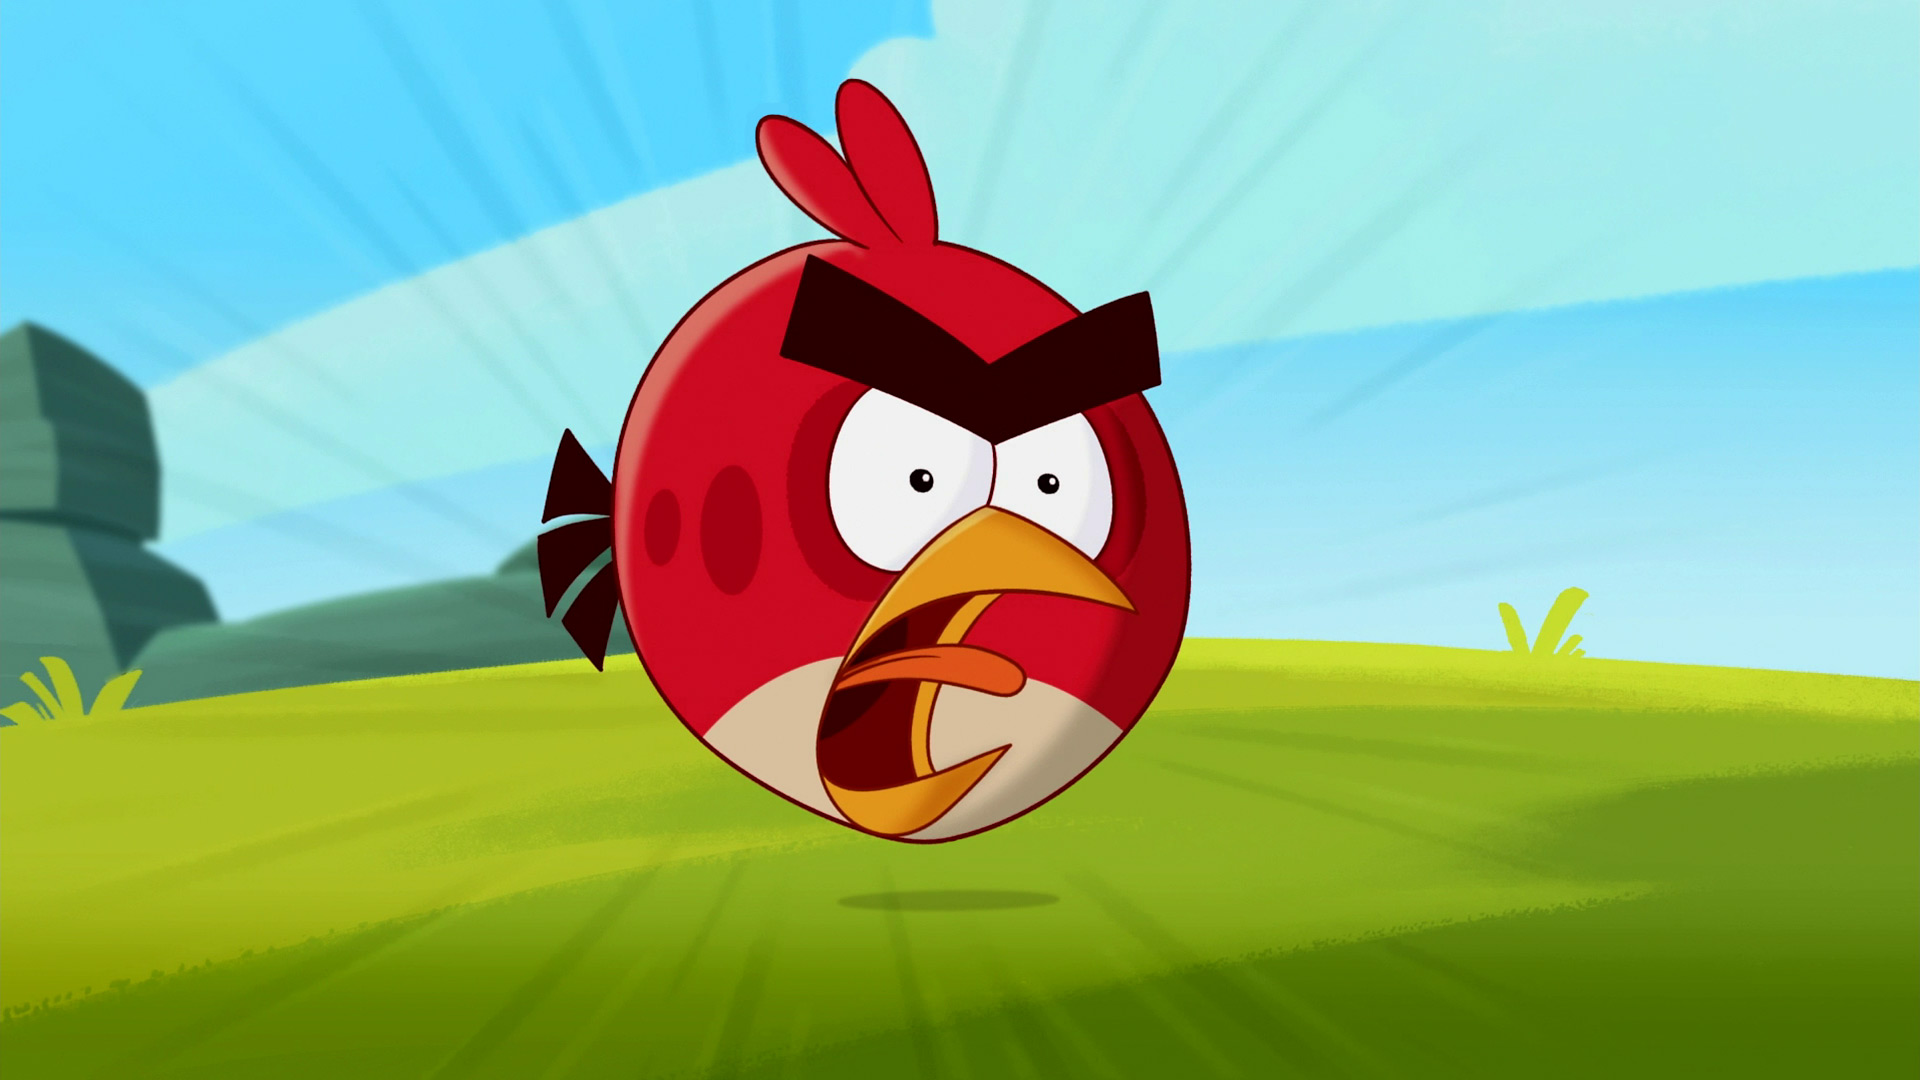 Descarga gratuita de fondo de pantalla para móvil de Dibujos Animados, Angry Birds, Videojuego.